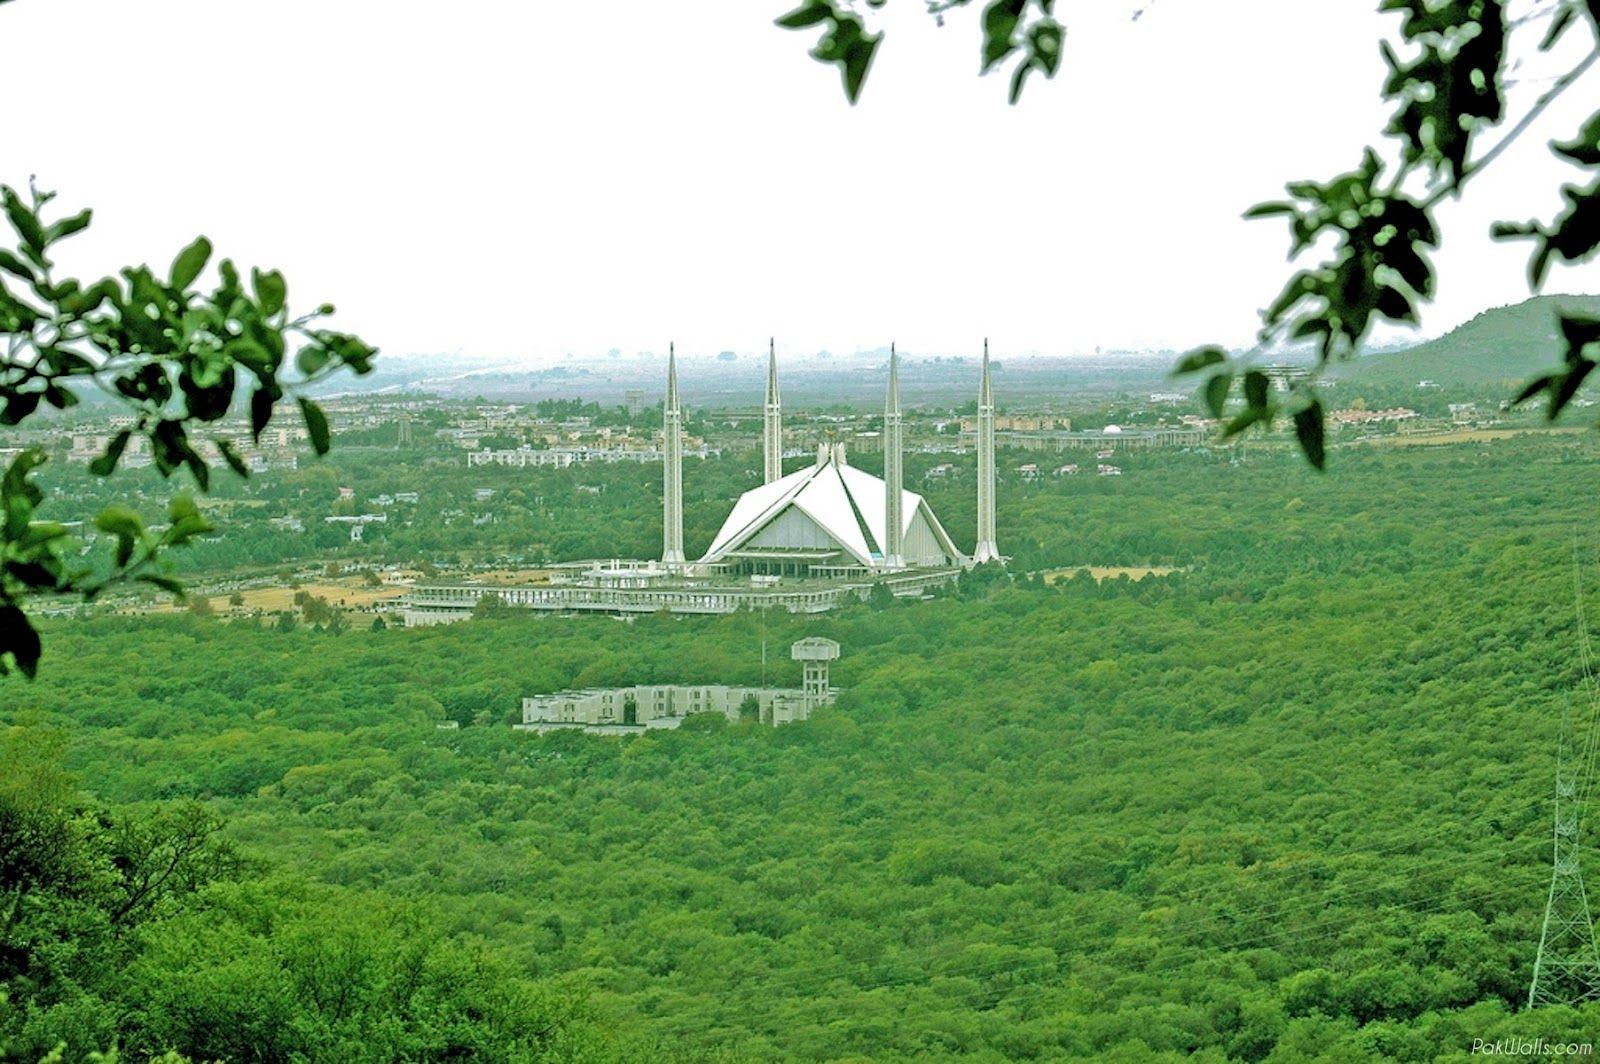 ღWallpaperღ: Islamabad Wallpaper